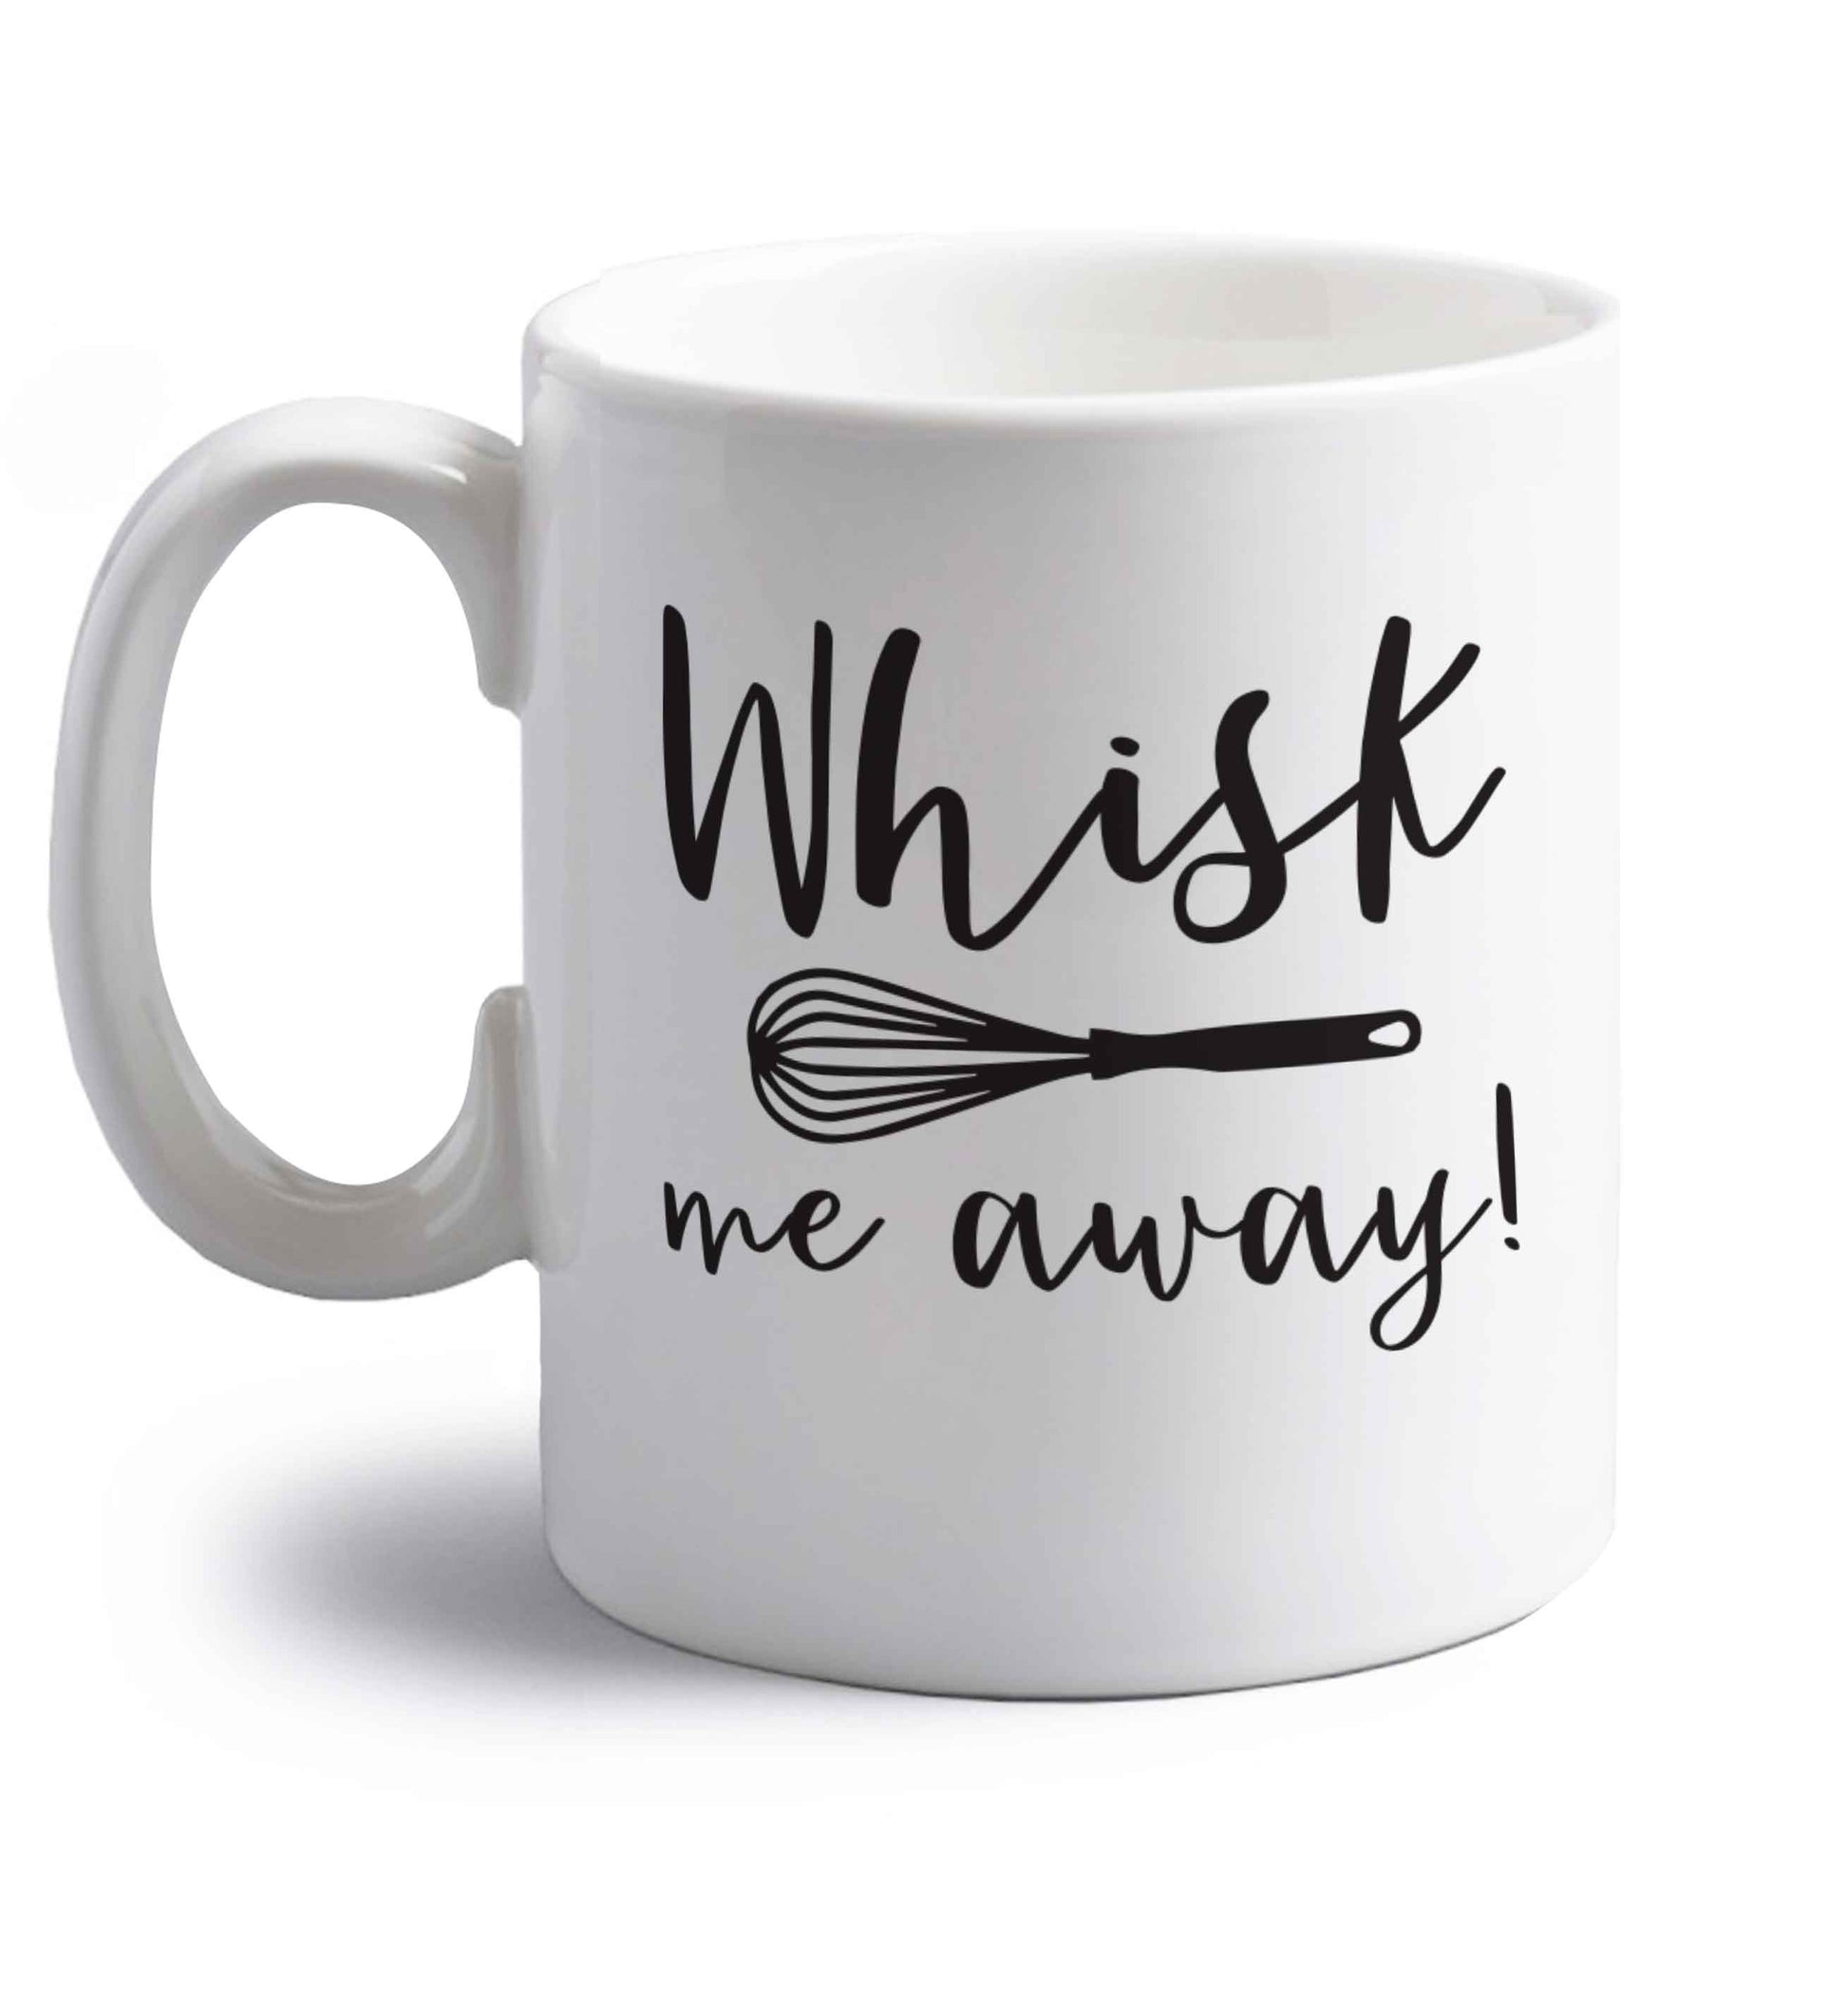 Whisk me away right handed white ceramic mug 